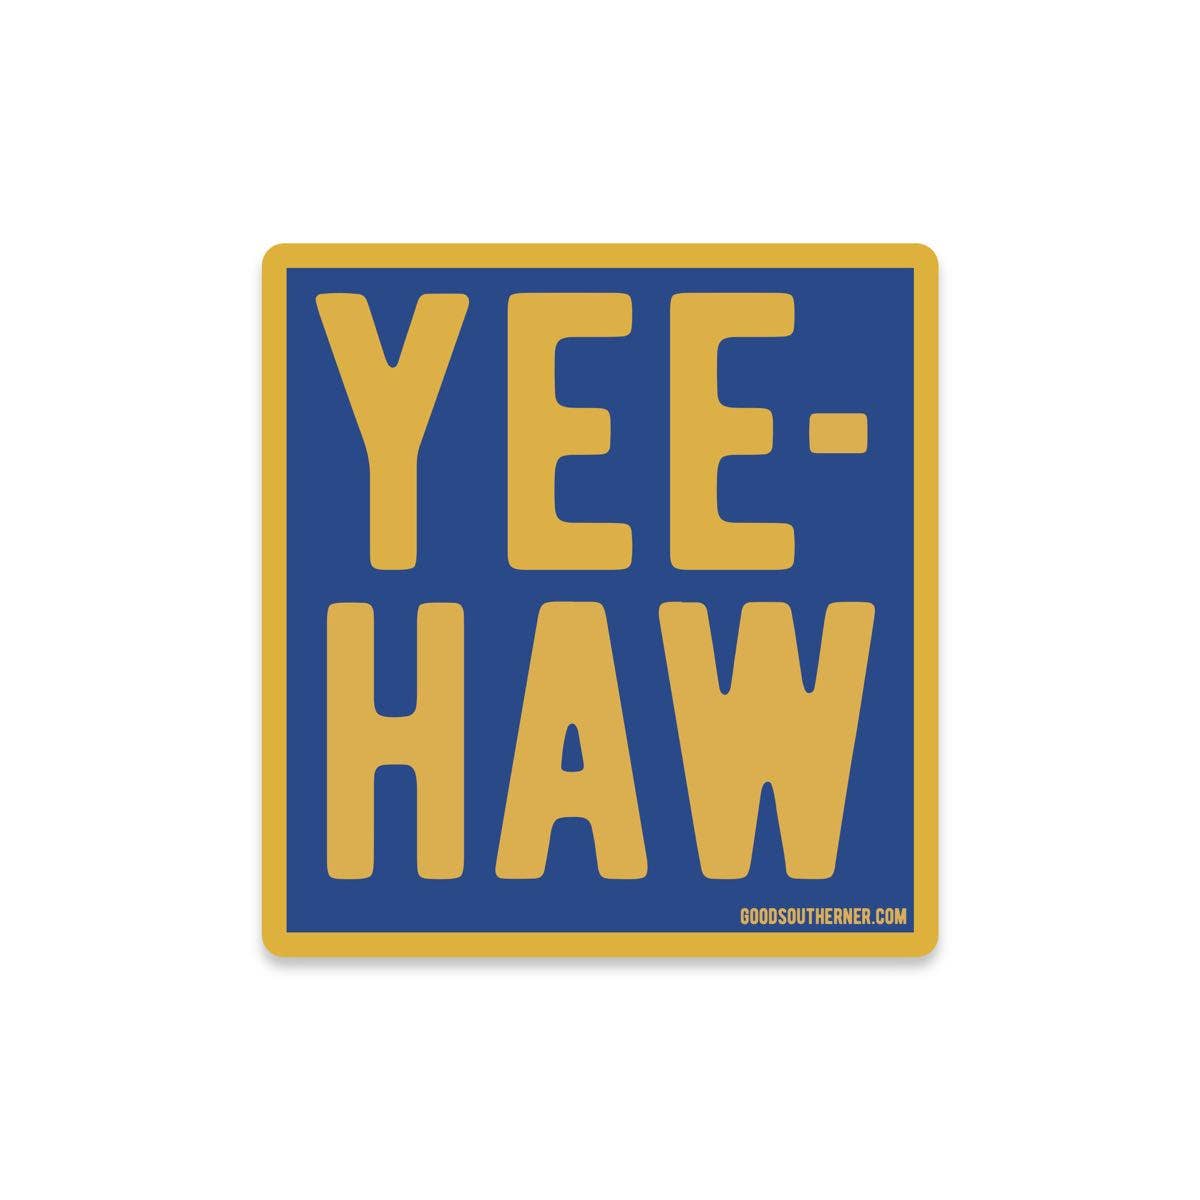 Yee-Haw Sticker